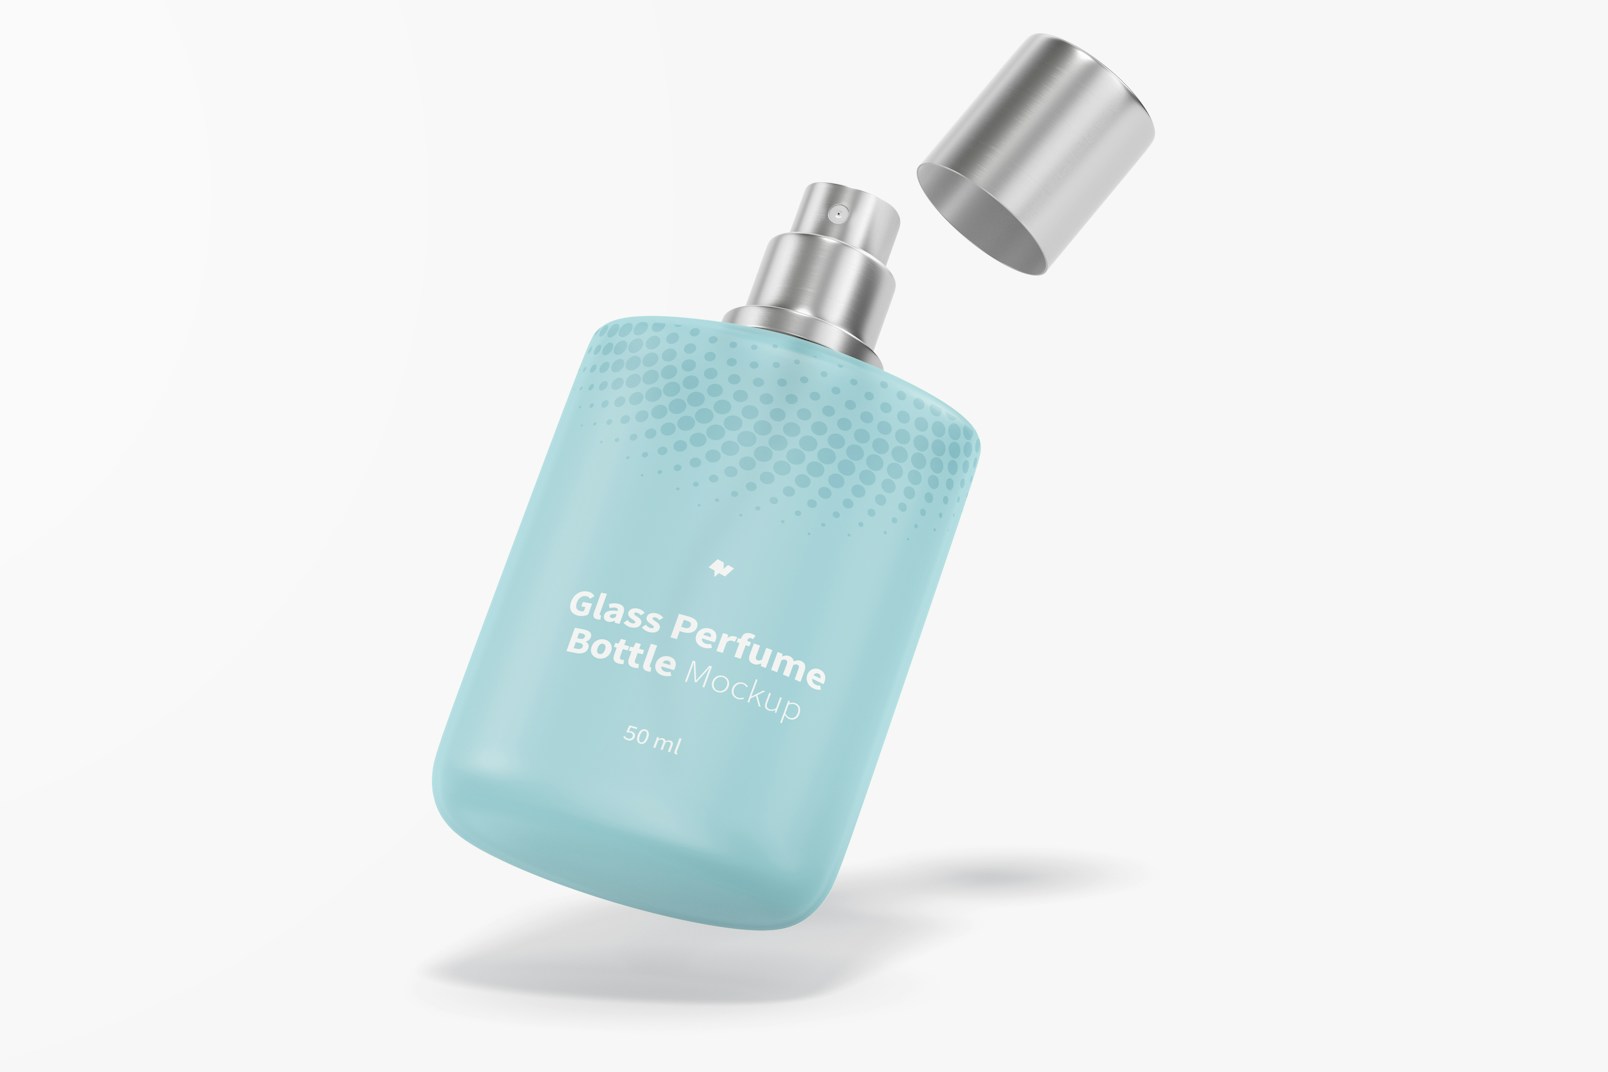 Maqueta de Botella de Perfume de 50ml, Flotando